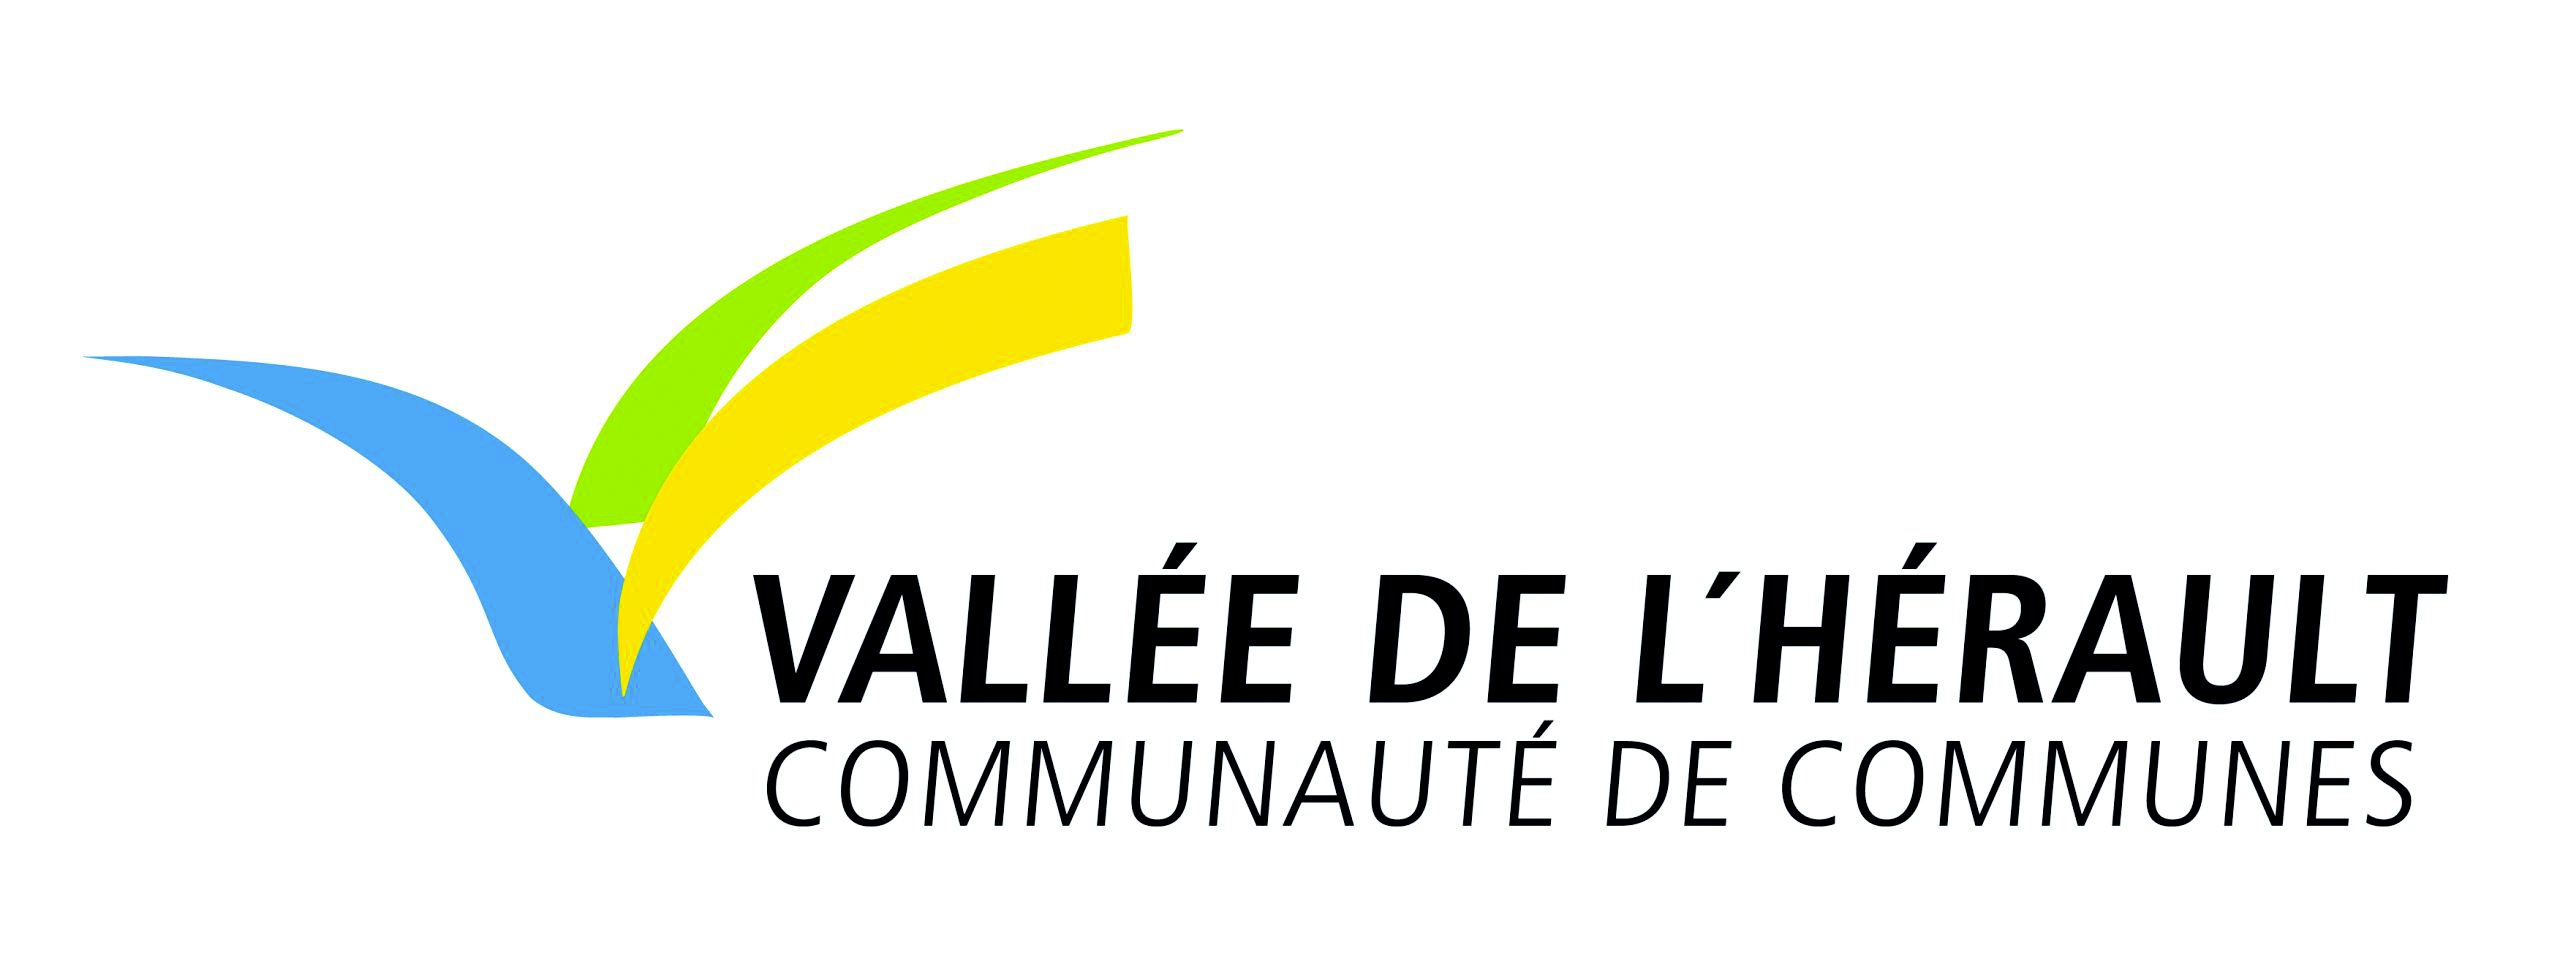 Communauté de commune de la vallée de l'Hérault